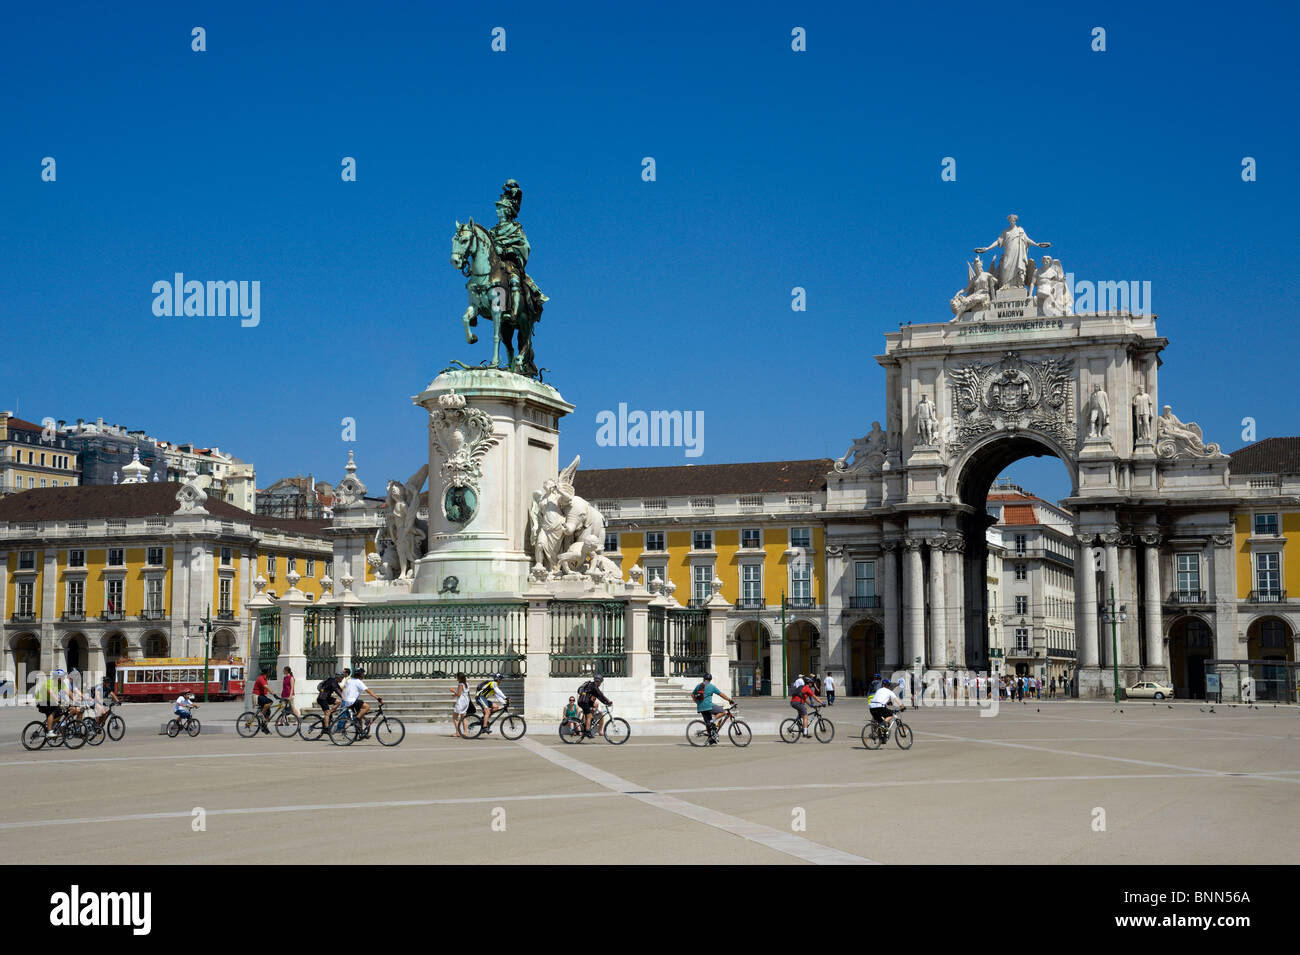 Portugal, Lisbonne, la Praca do Comercio, la place Terreiro do Paco, avec la statue de Dom José I Banque D'Images